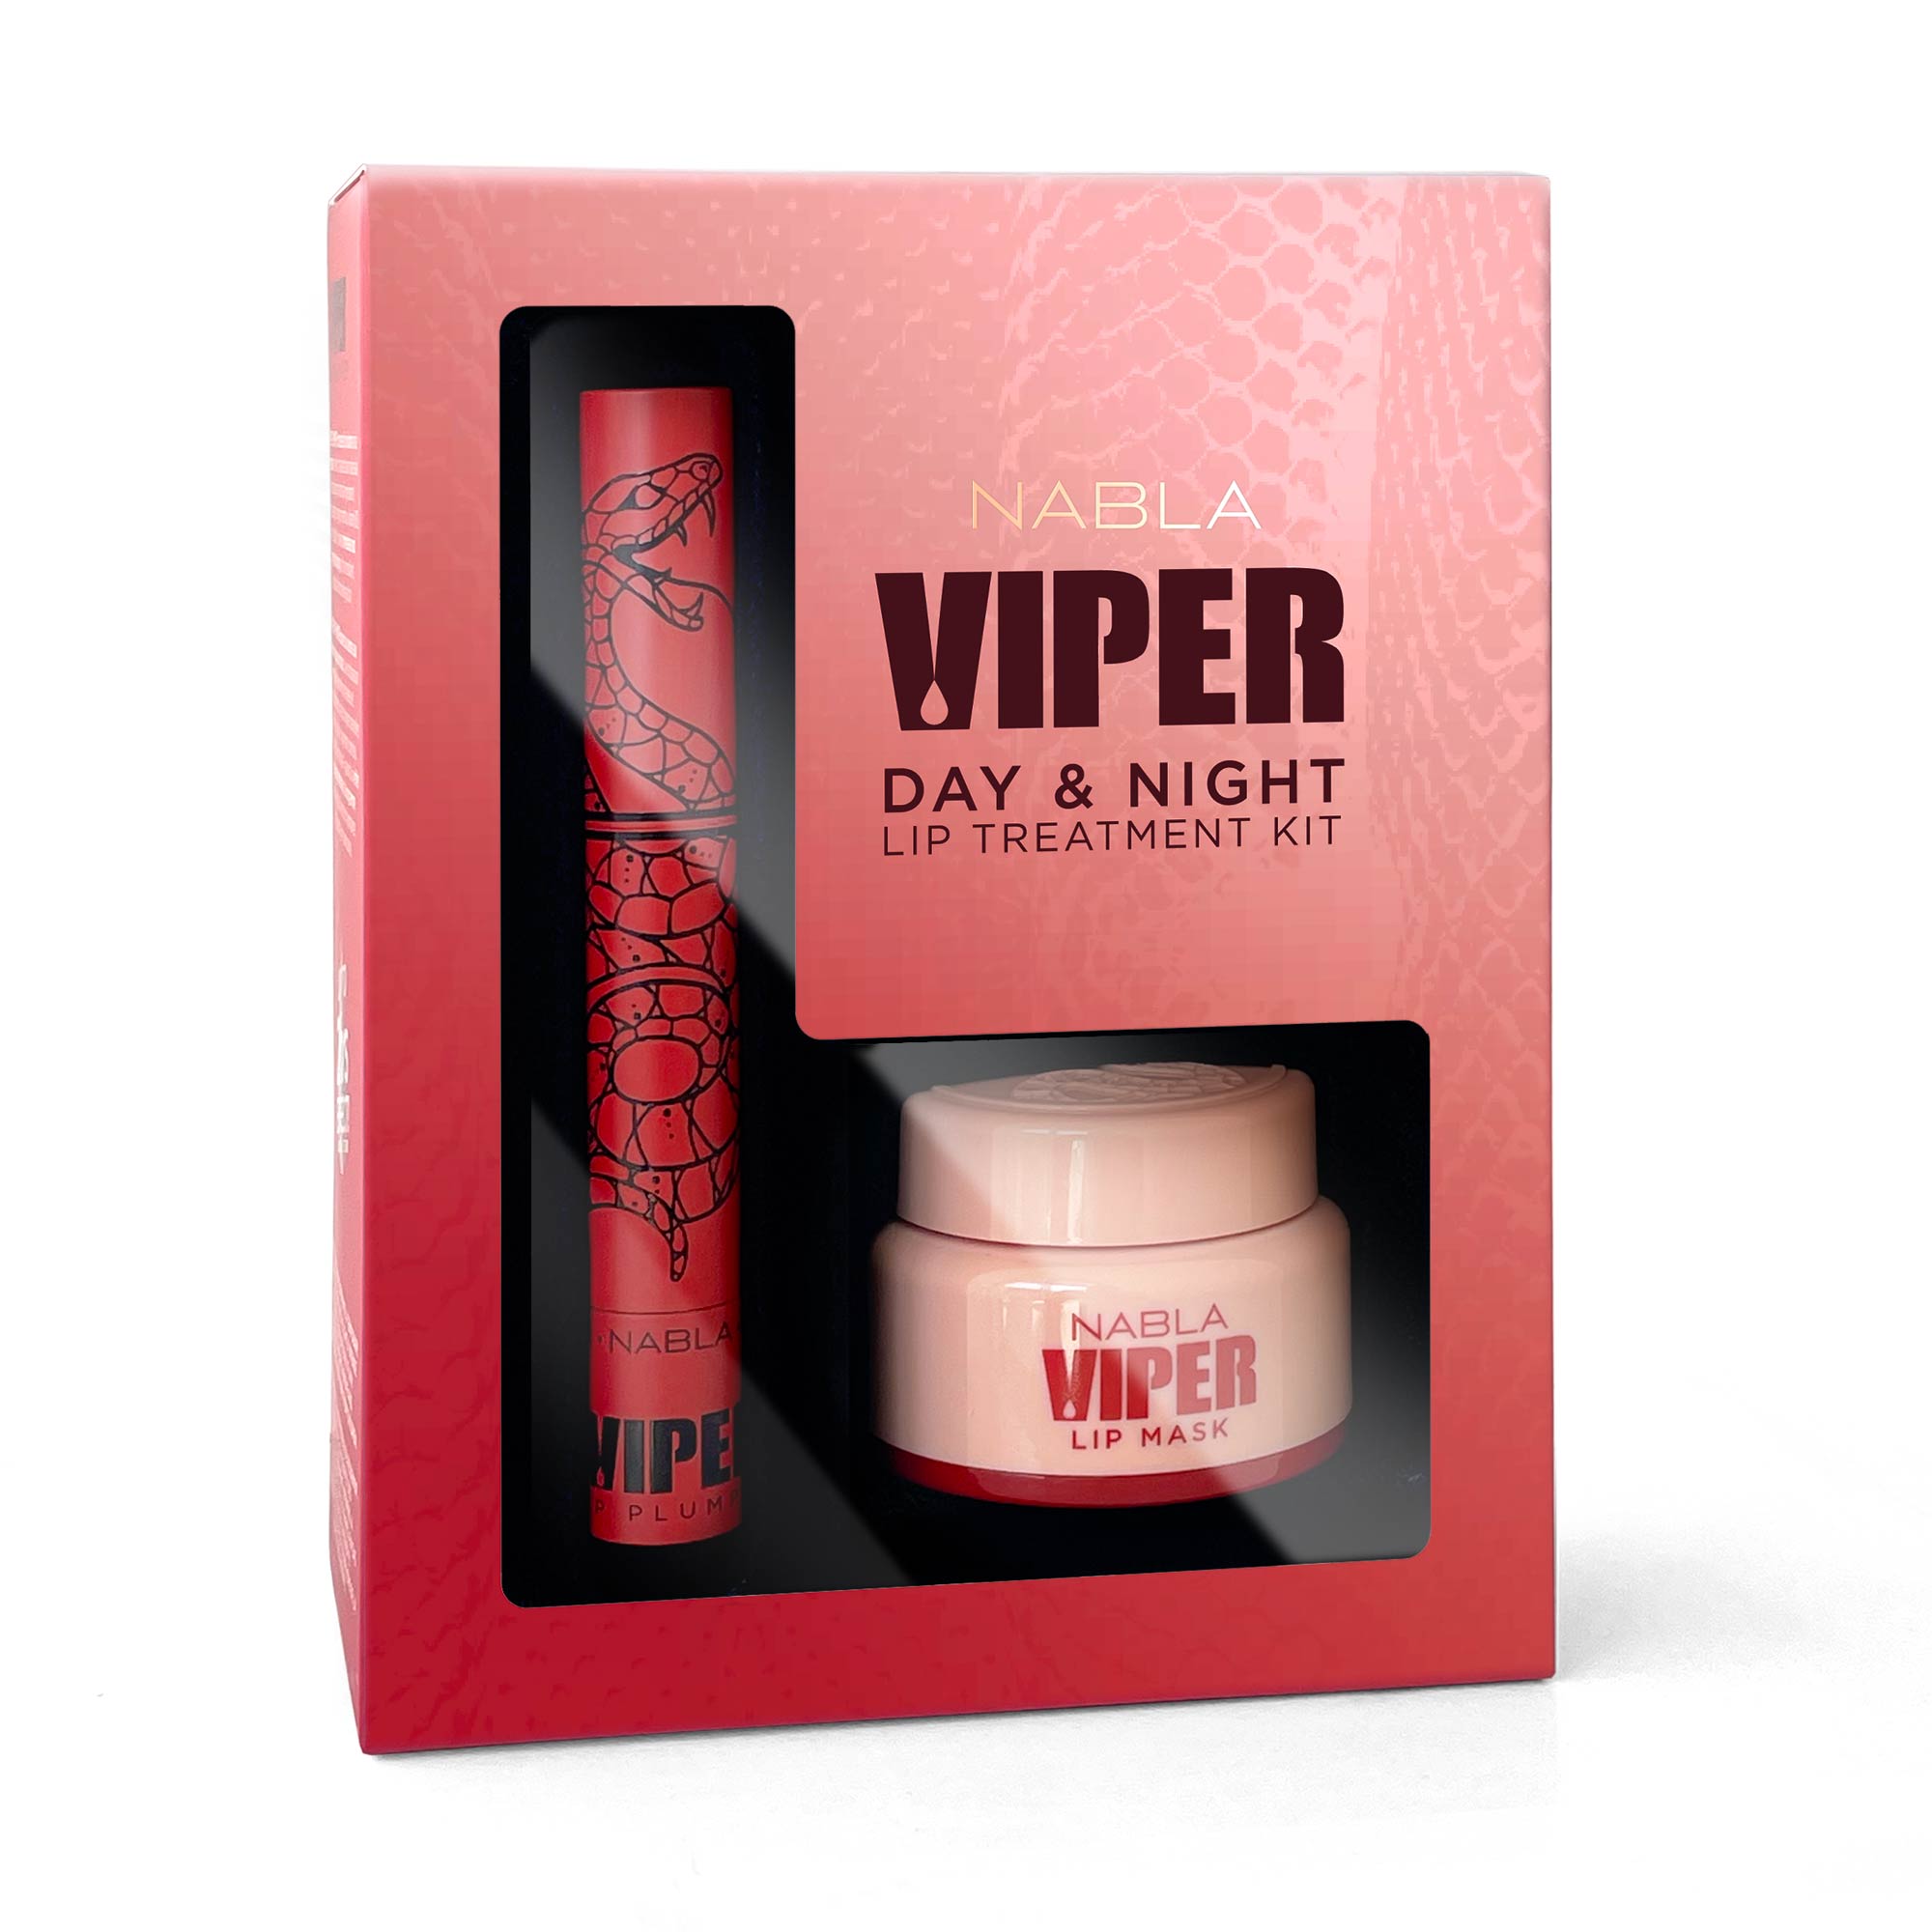 Viper Day & Night Lip Treatment Kit